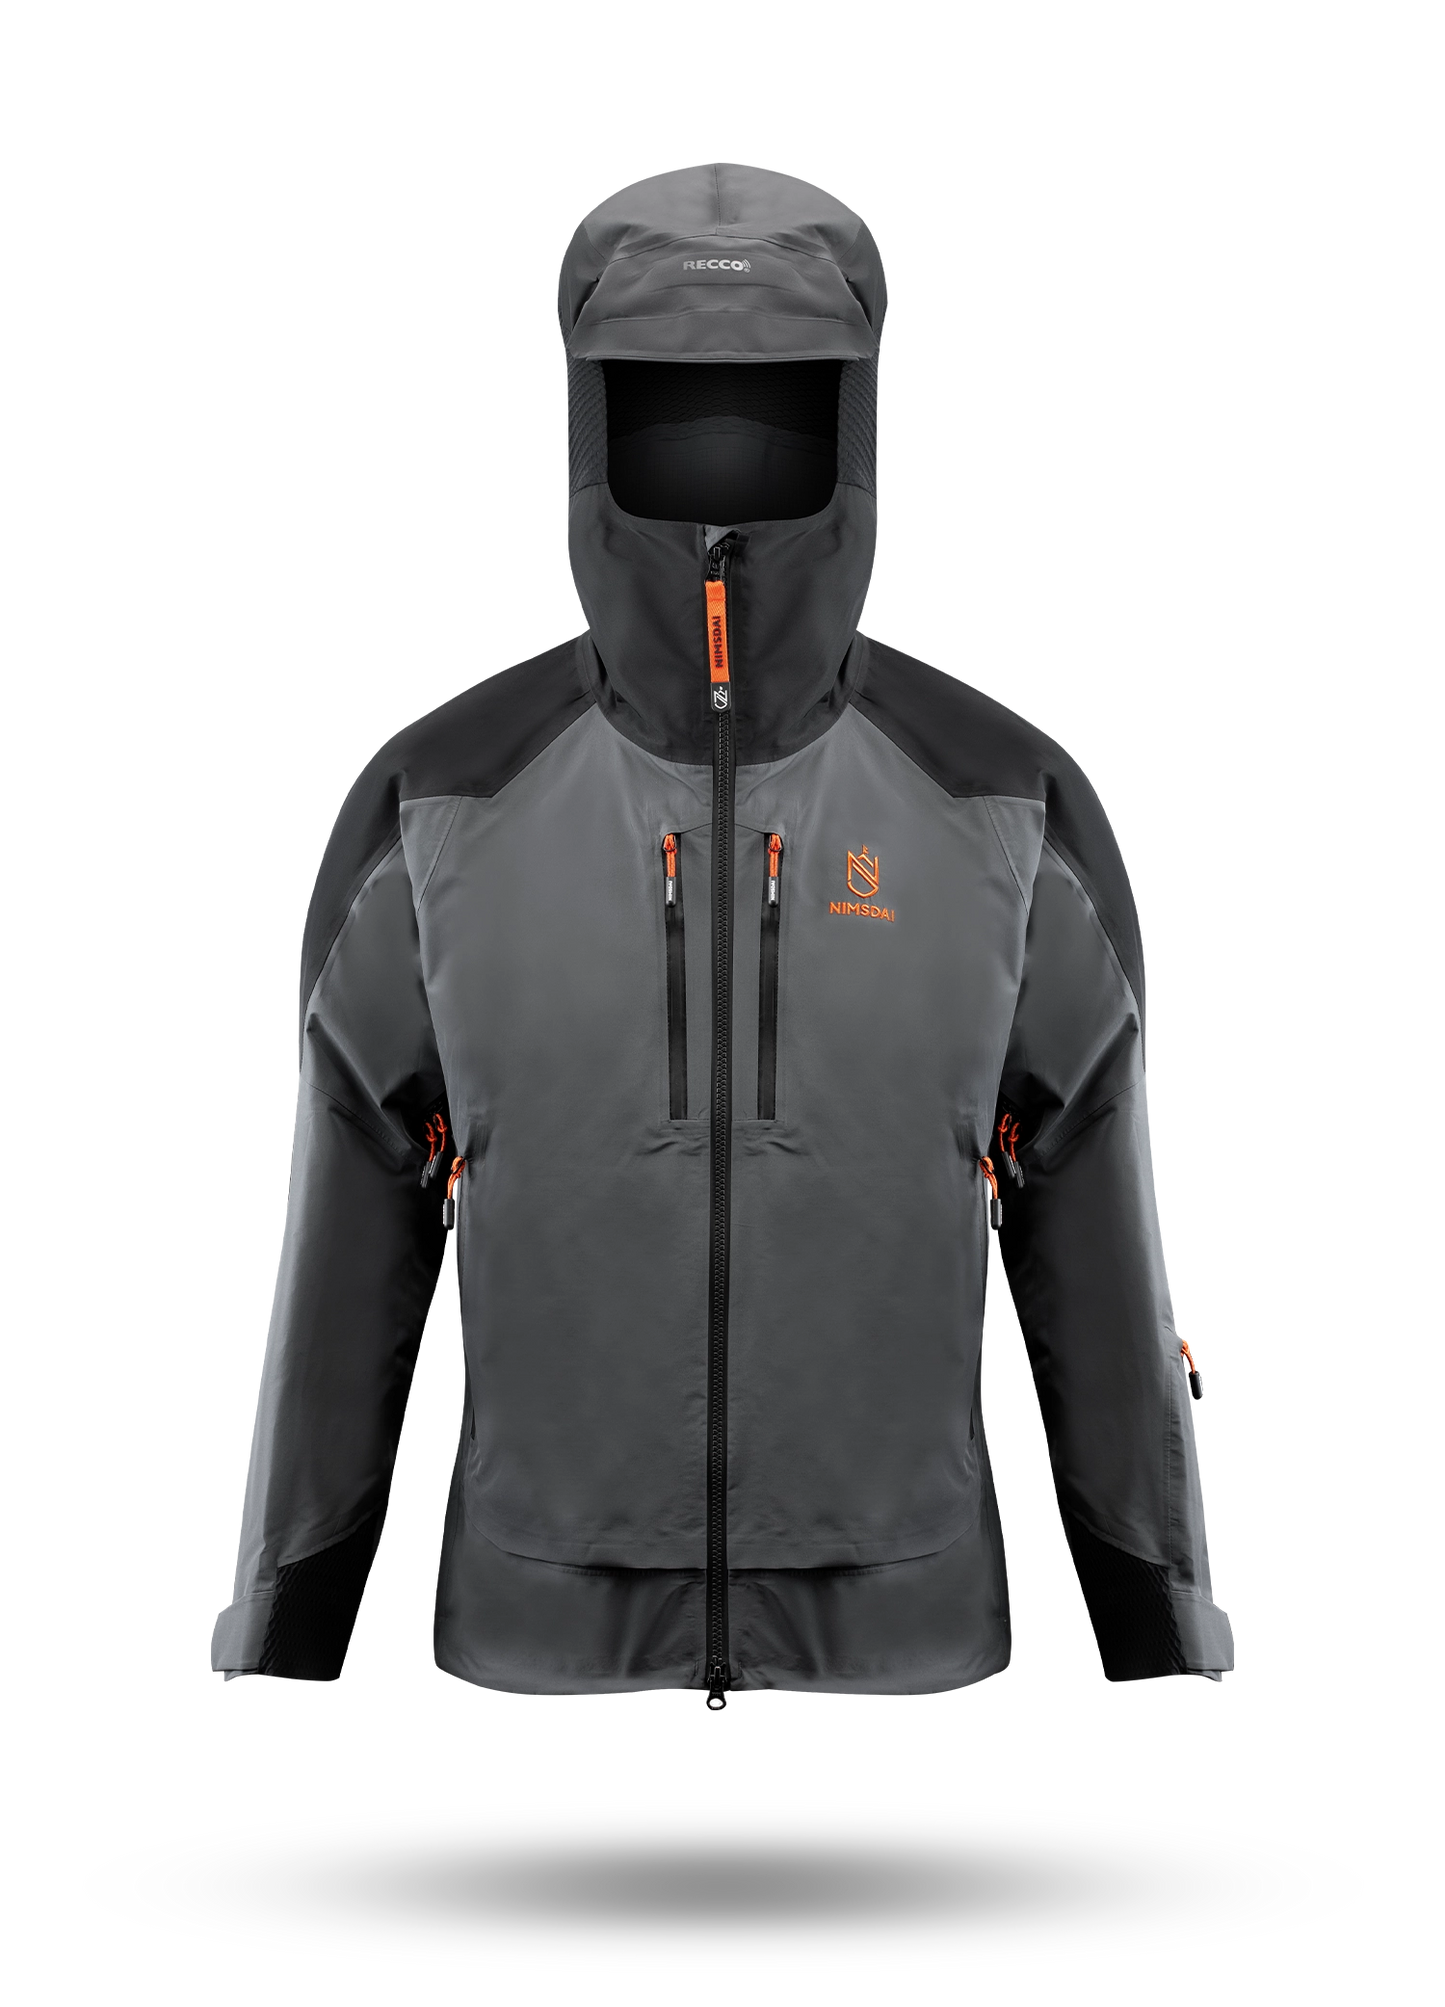 K2 Winter Waterproof Jacket